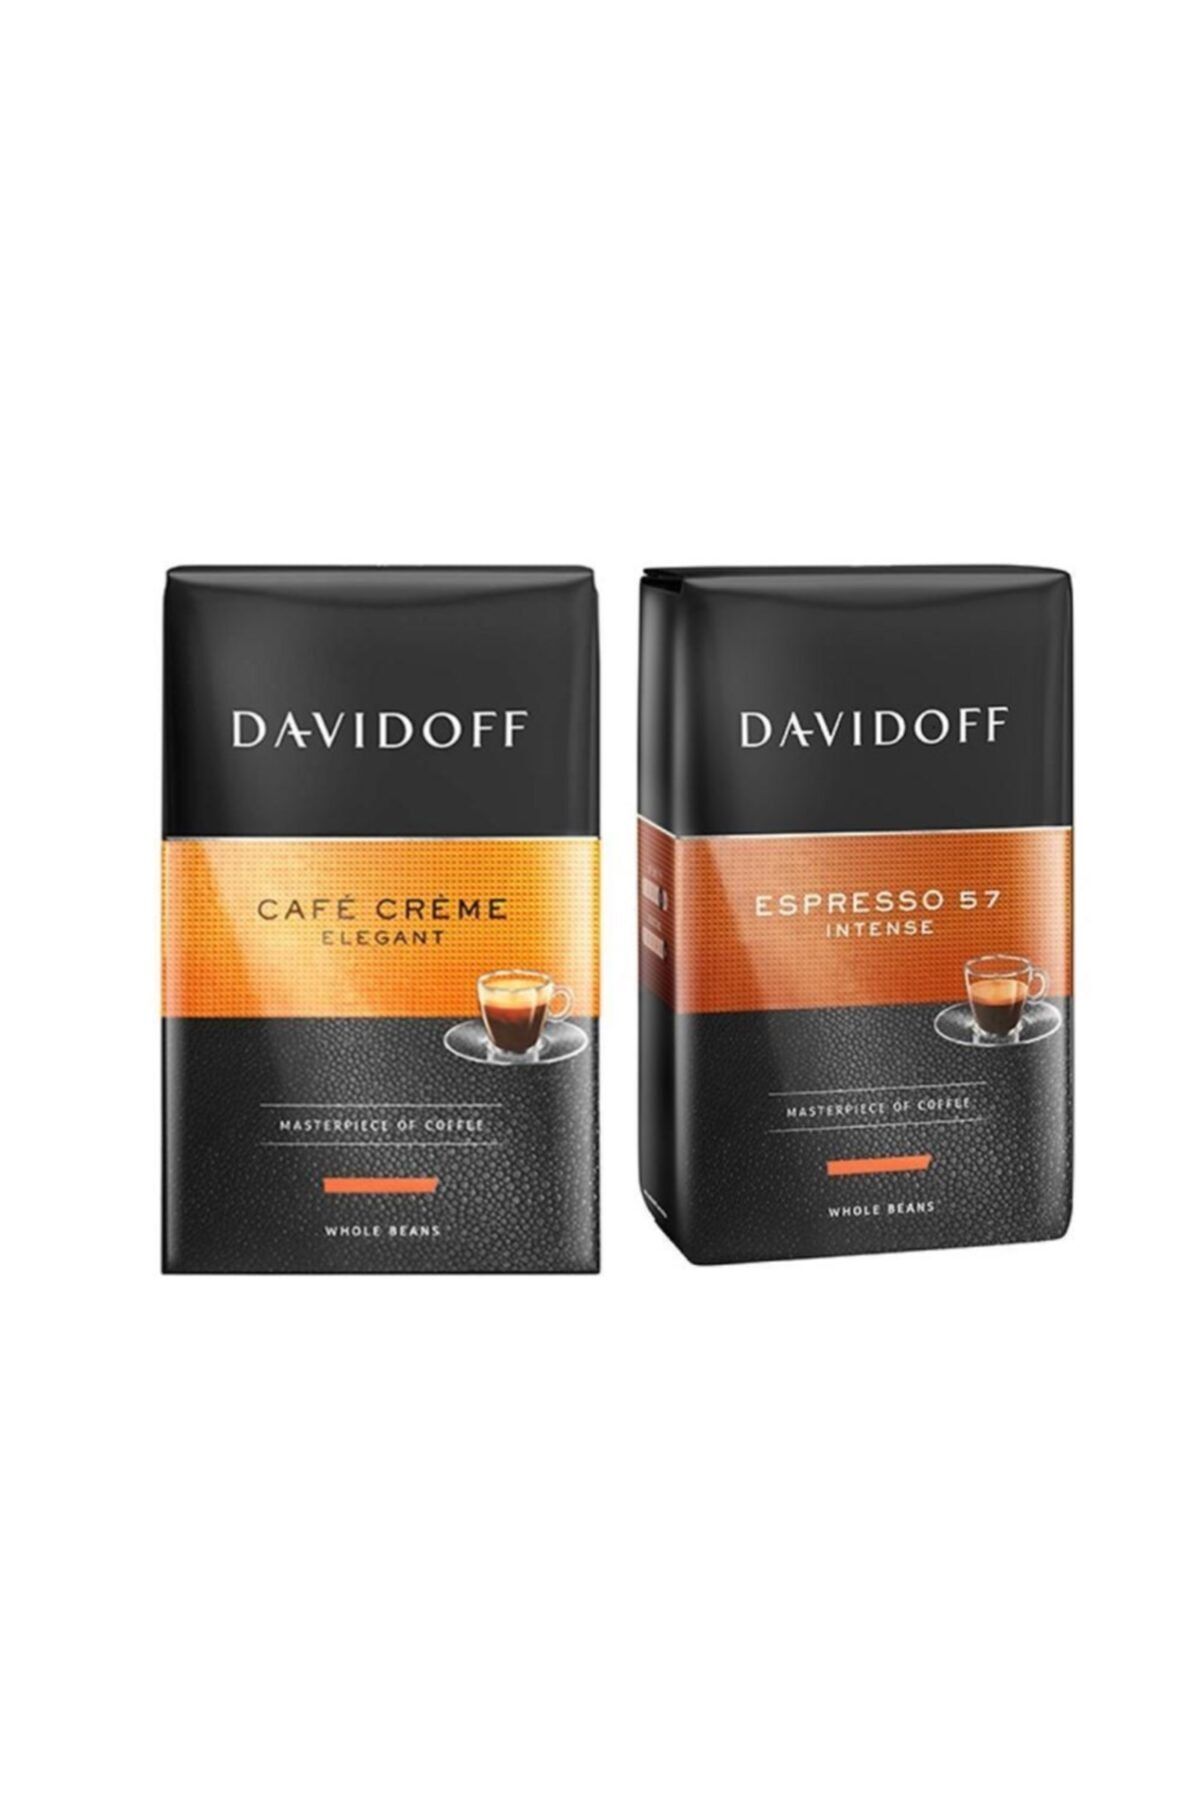 Davidoff Cafe Creme 500 gr & Espresso 57 Çekirdek Kahve 500 gr